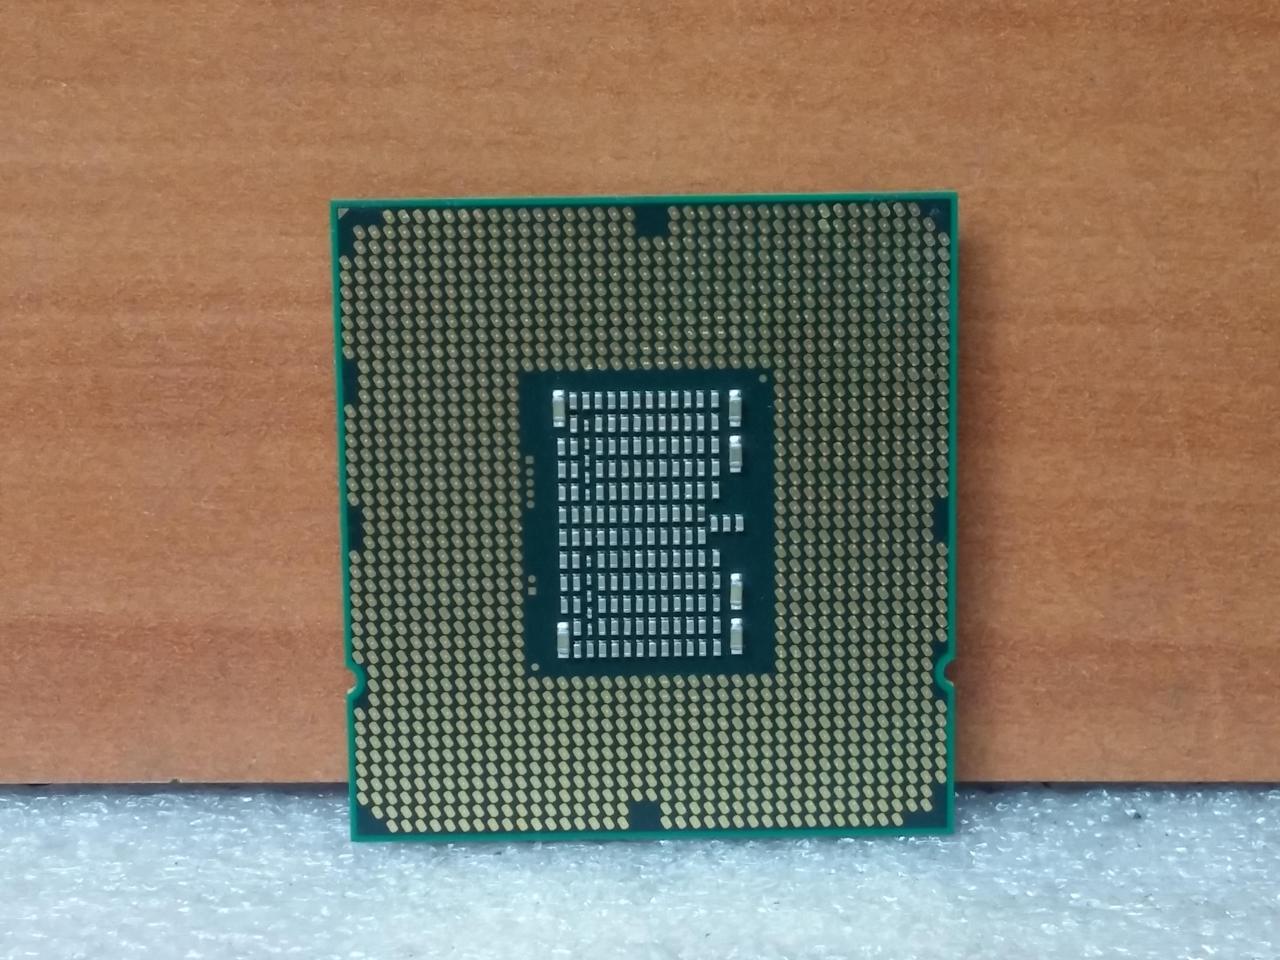 Intel Xeon E5645 2.4 GHz LGA 1366 80W Server Processor - Newegg.com